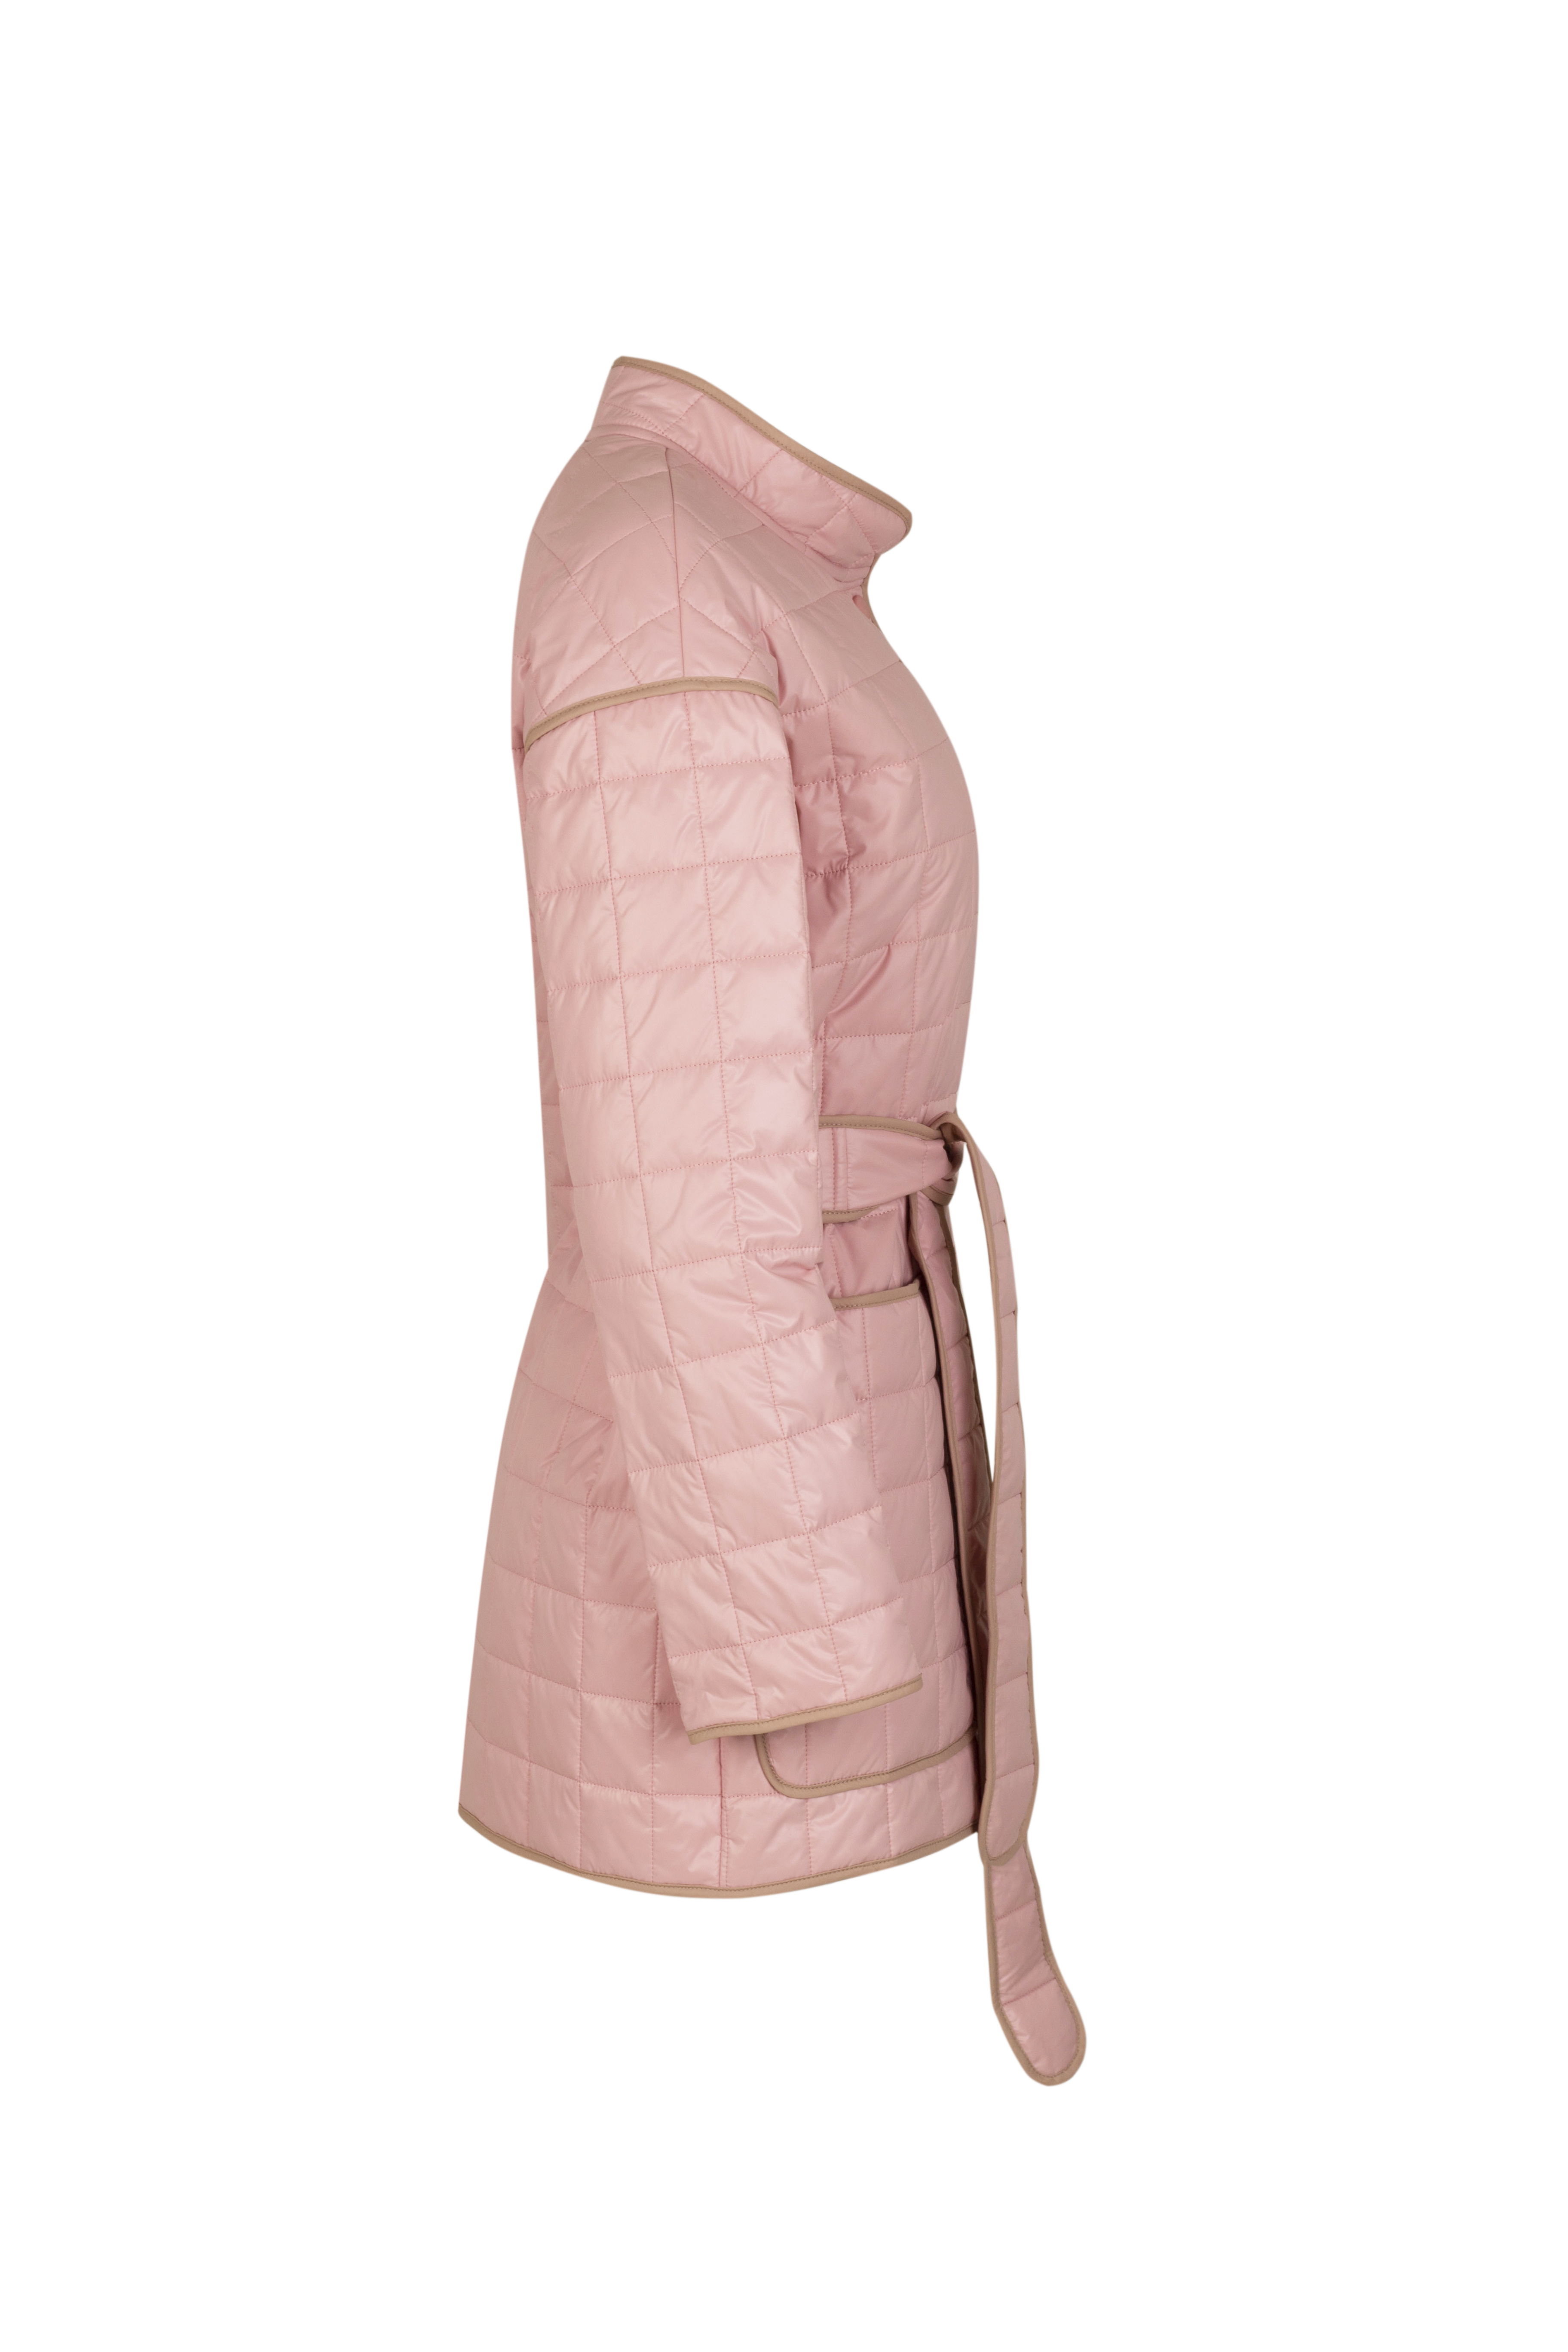 Куртка женская плащевая утепленная 4-12494-1. Фото 2.